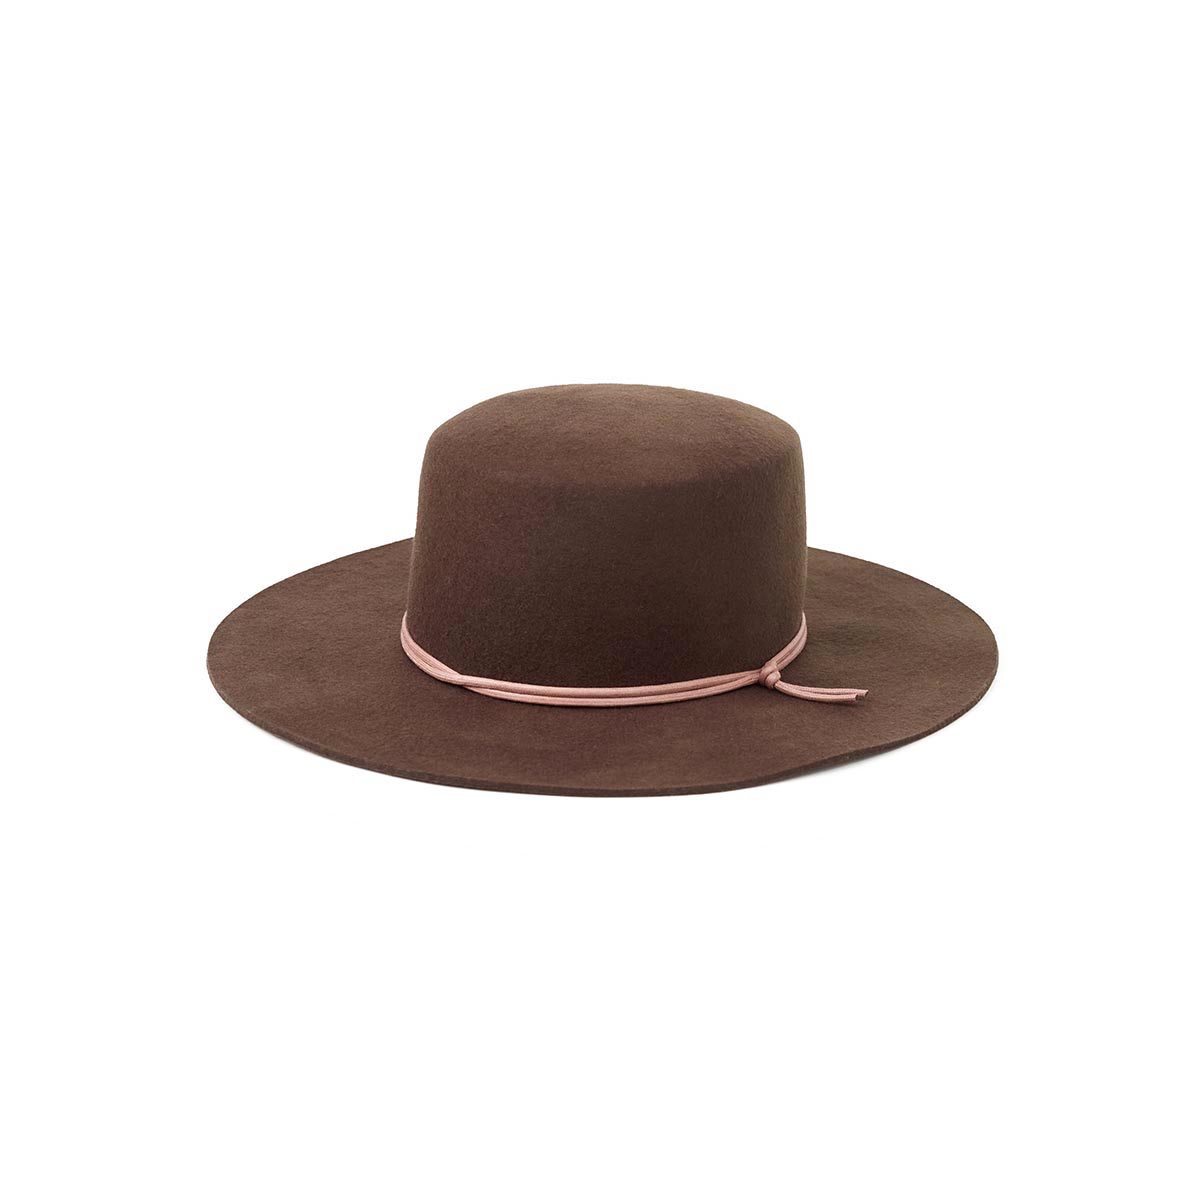 Tentree Women's Boater Hat